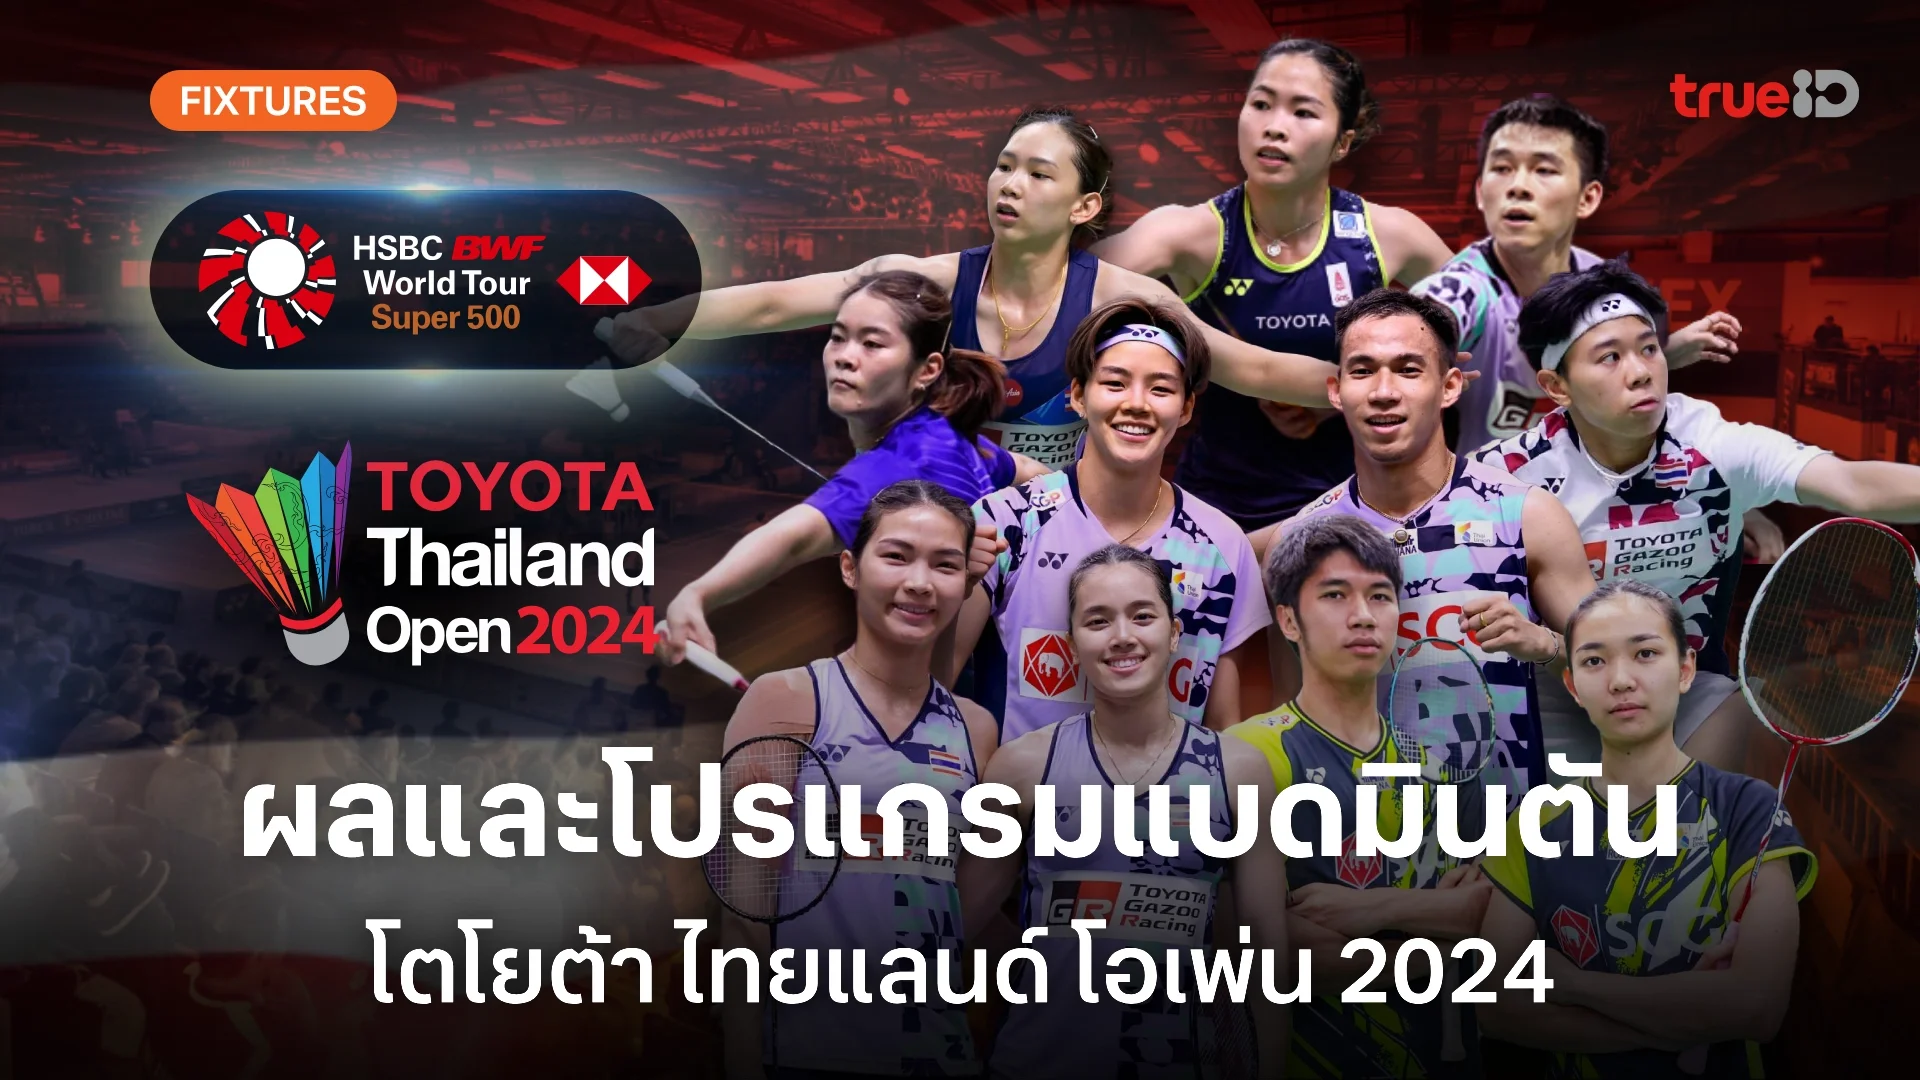 ผลและโปรแกรม แบดมินตัน 'ไทยแลนด์ โอเพ่น 2024' ของนักกีฬาไทย (ลิ้งก์ดูสด)